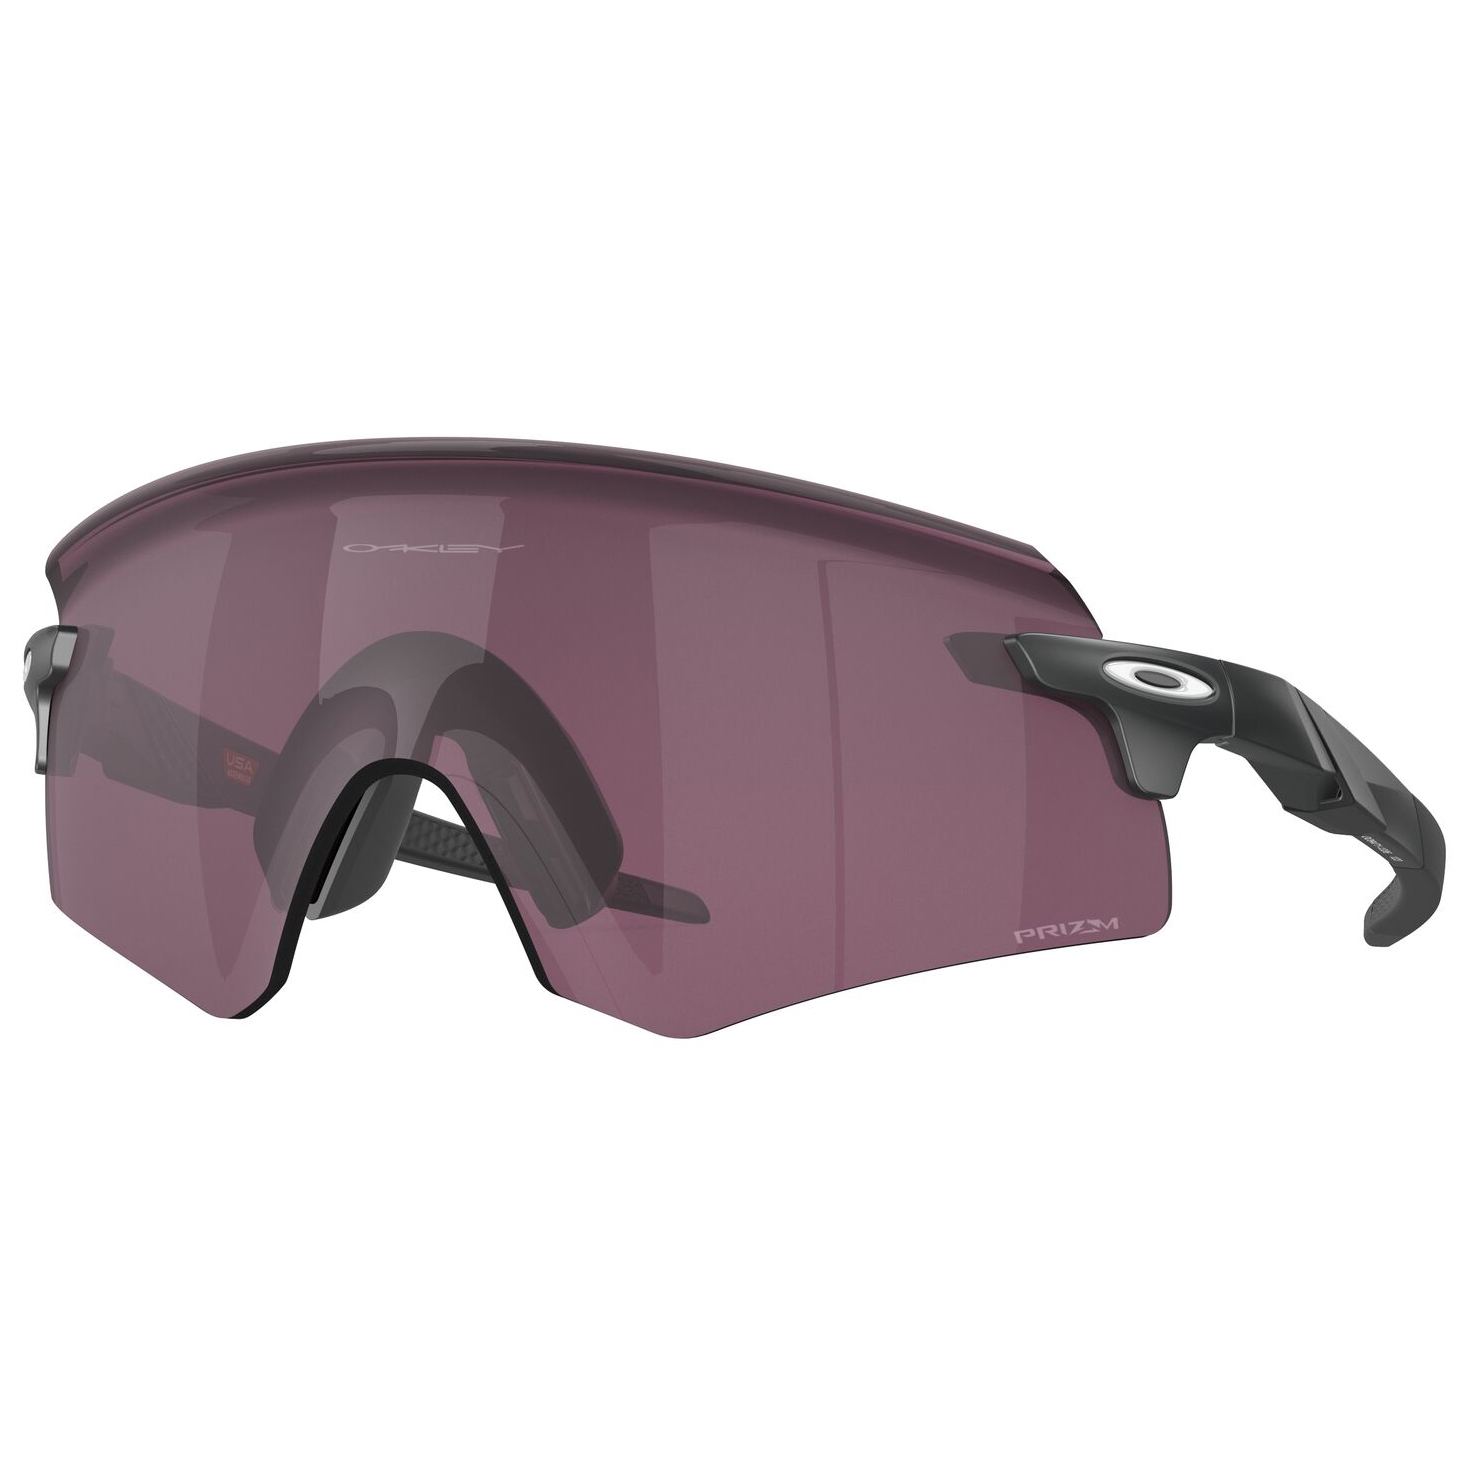 Велосипедные очки Oakley Encoder Prizm S3 (VLT 11%), матовый карбон ii